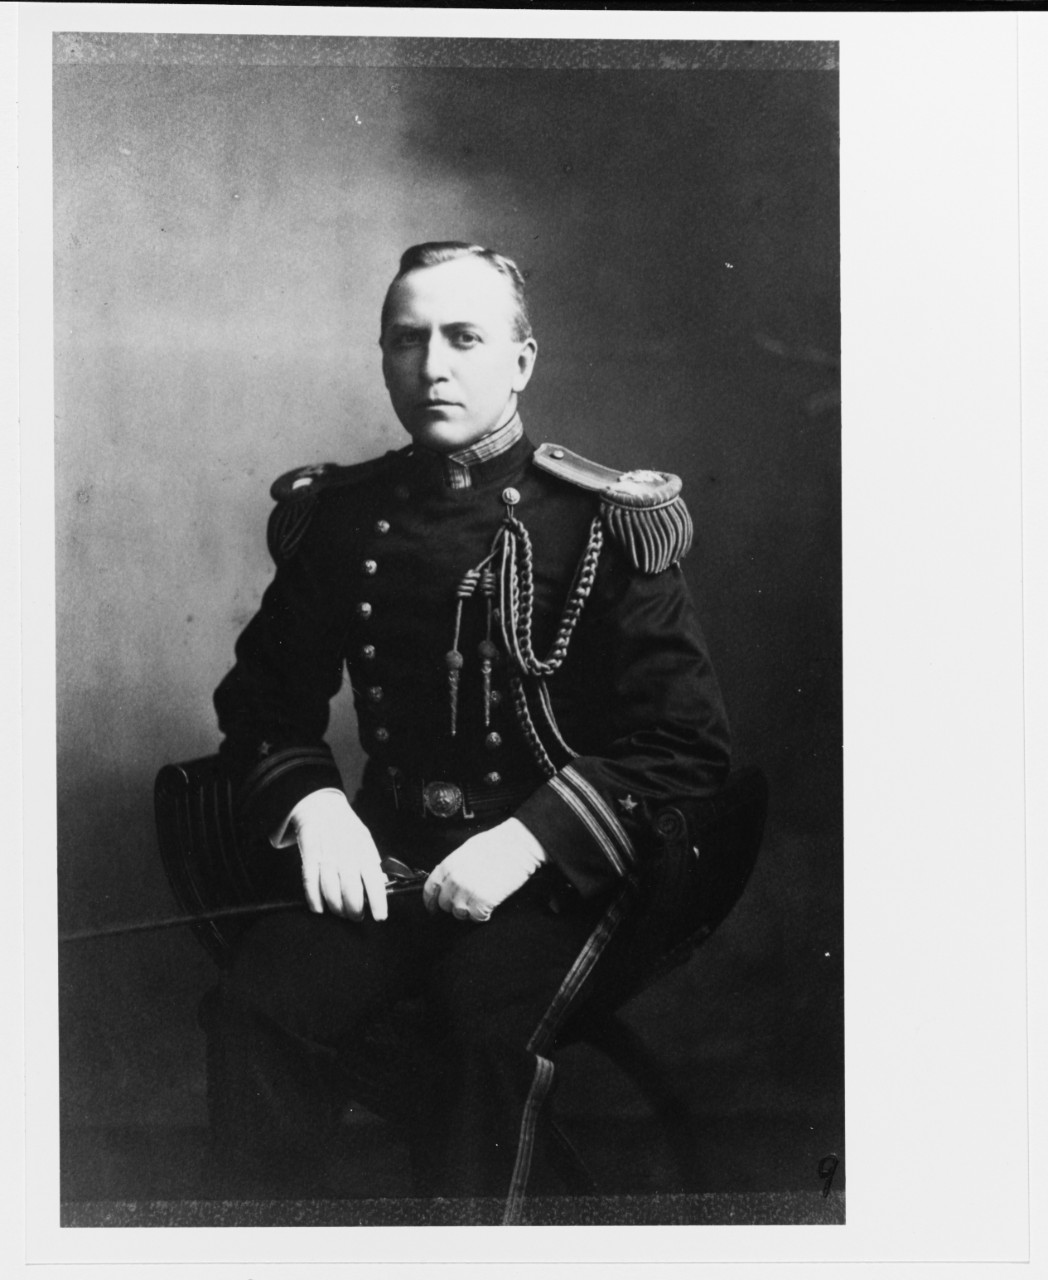 Lieutenant Royal Eason Ingersoll, USN